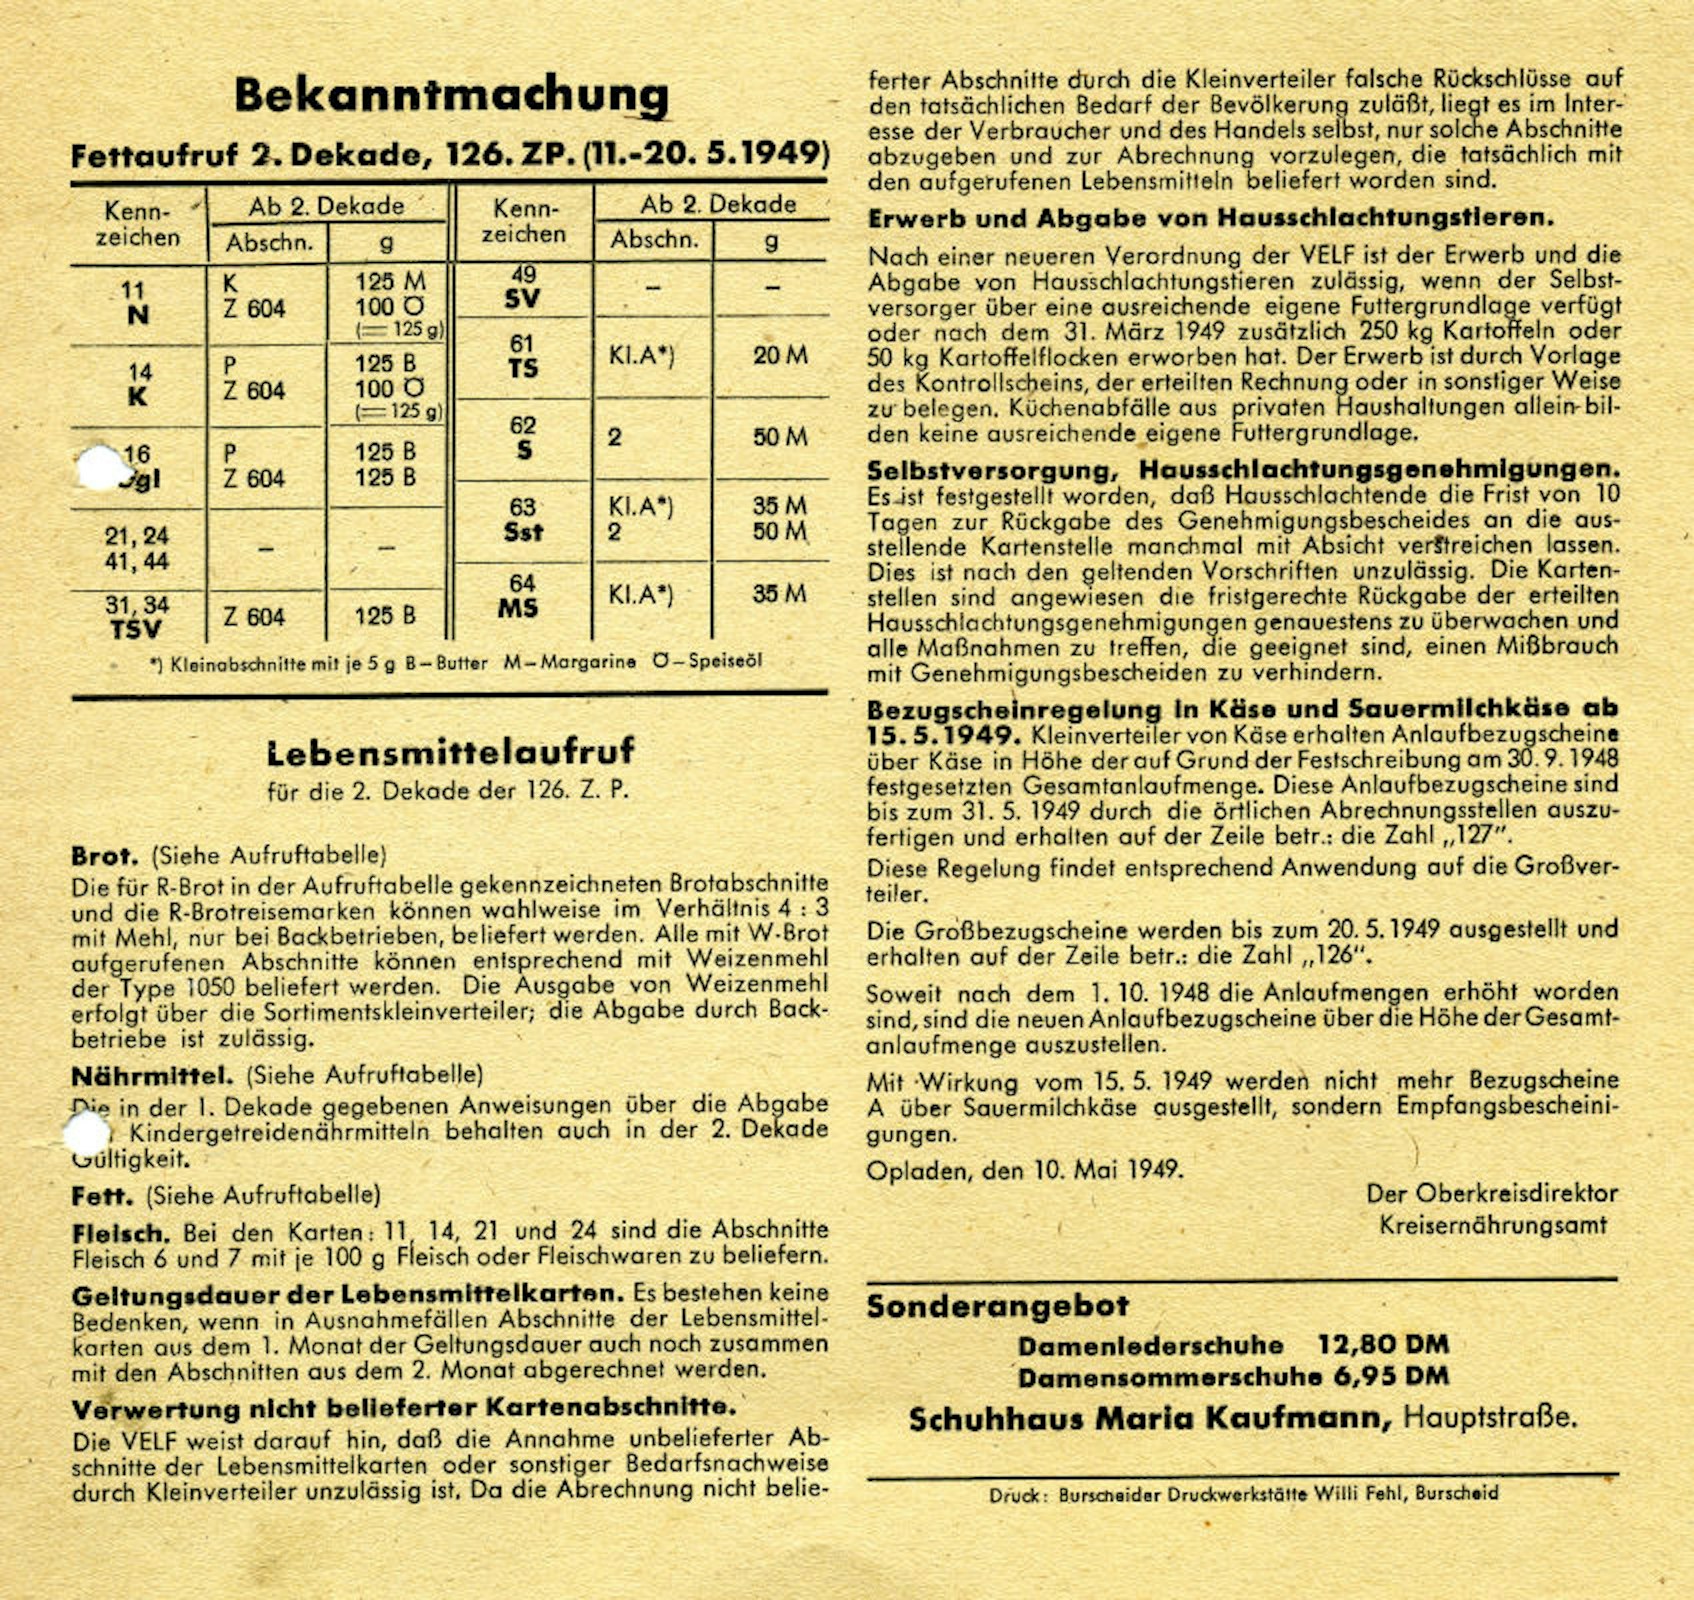 Bekanntmachung vom 10. Mai 1949 in Burscheid.